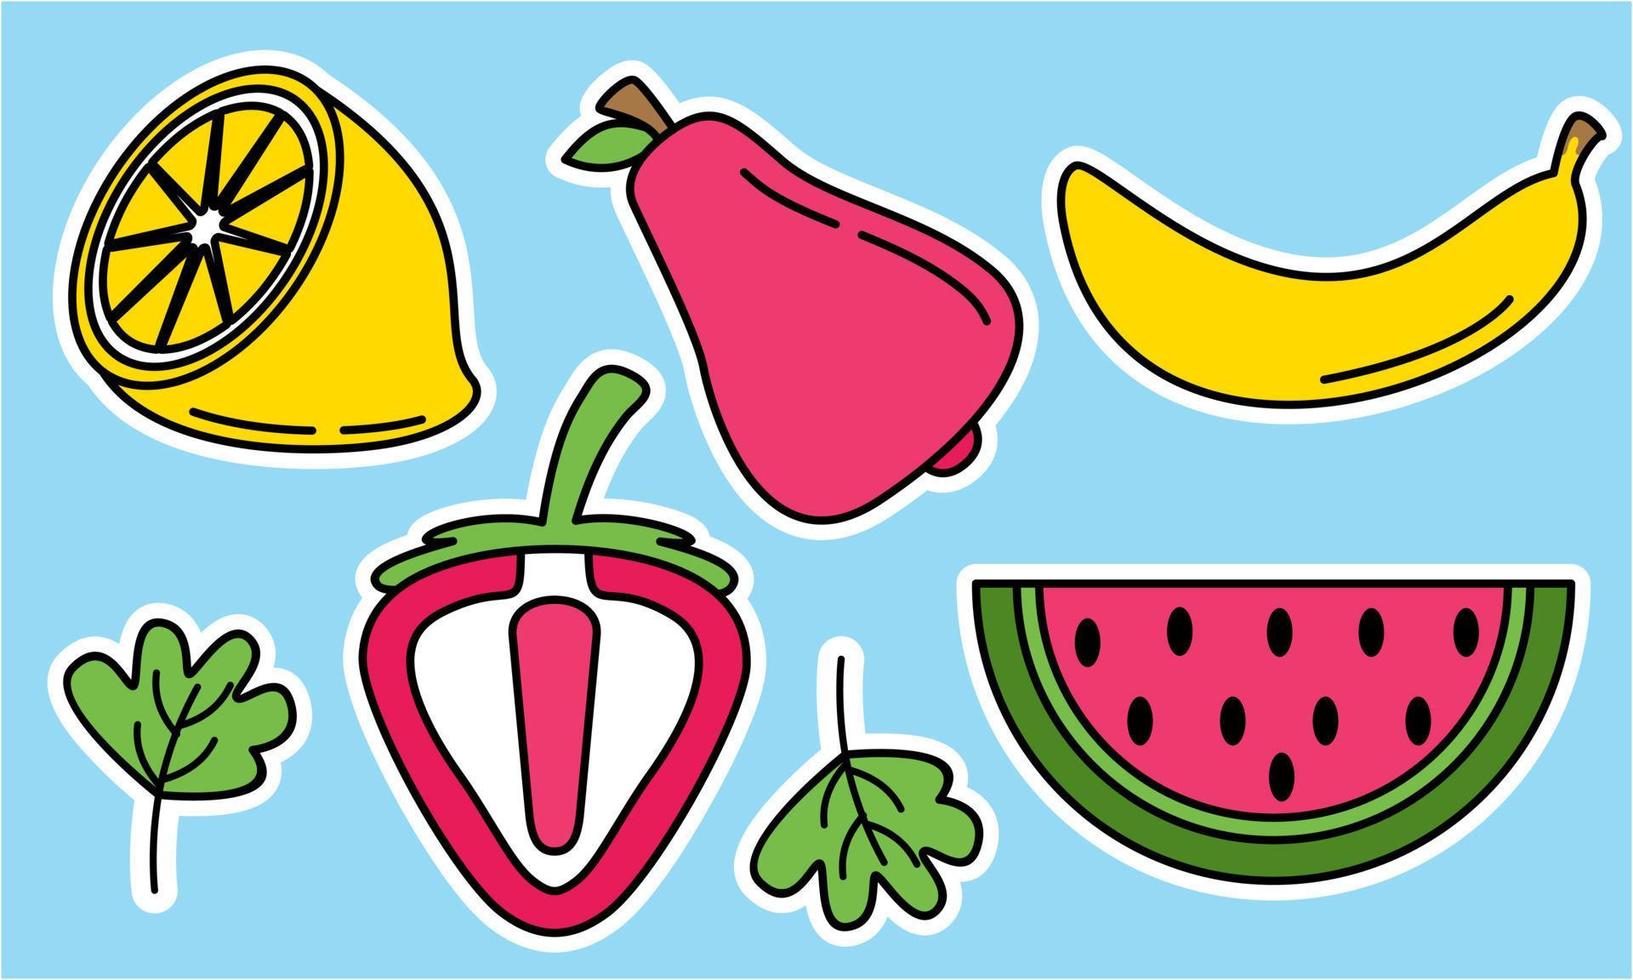 rabiscar frutas. frutas tropicais naturais, frutas orgânicas ou comida vegetariana. ícones isolados de vetor